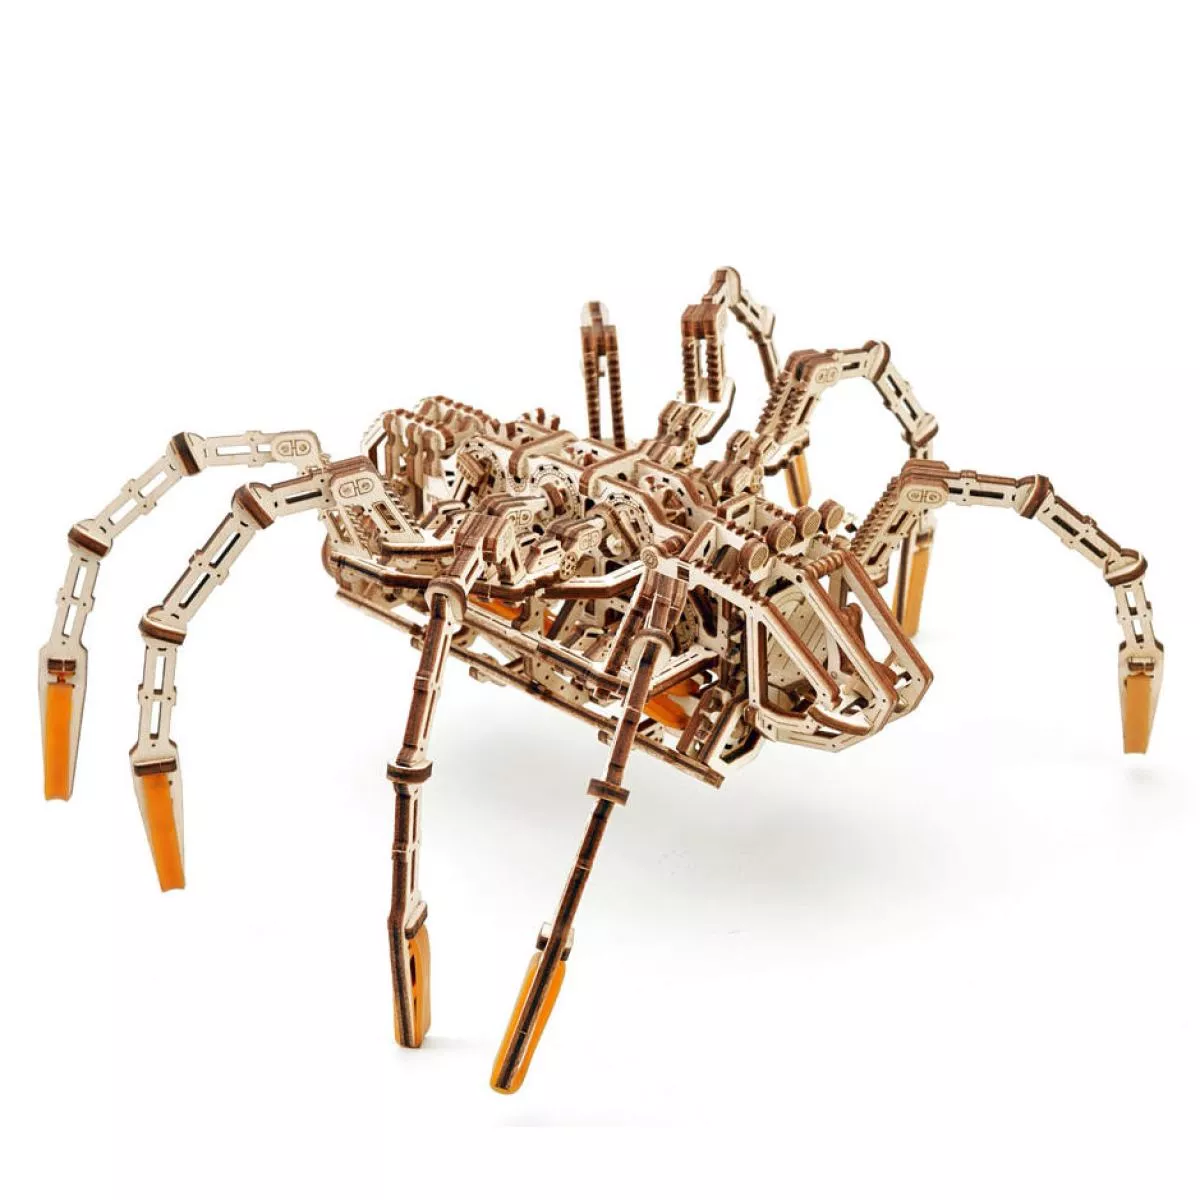 Alien-Spinne – Spielzeug-Bausatz mit Motor-Antrieb aus Holz